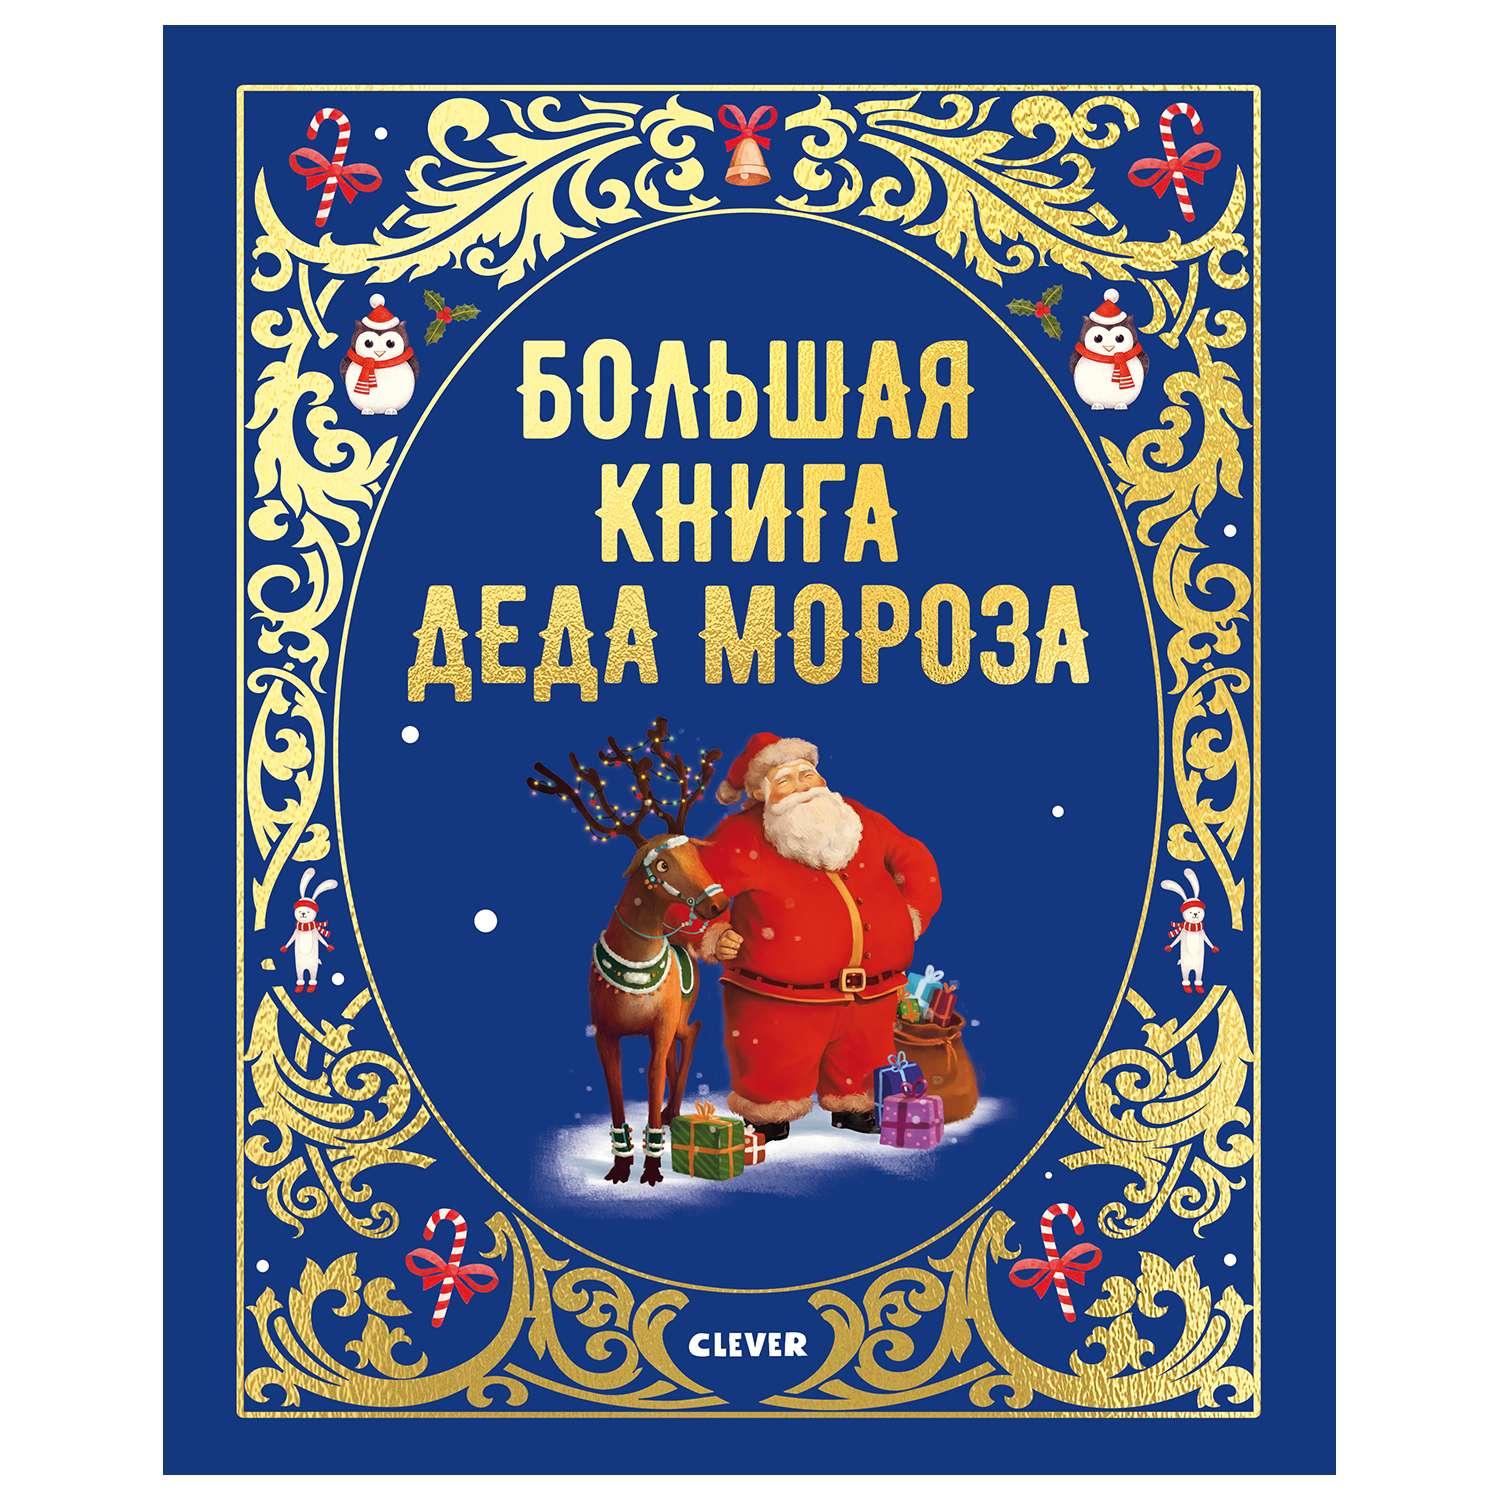 Книга Clever Большая сказочная серия Большая книга Деда Мороза - фото 1